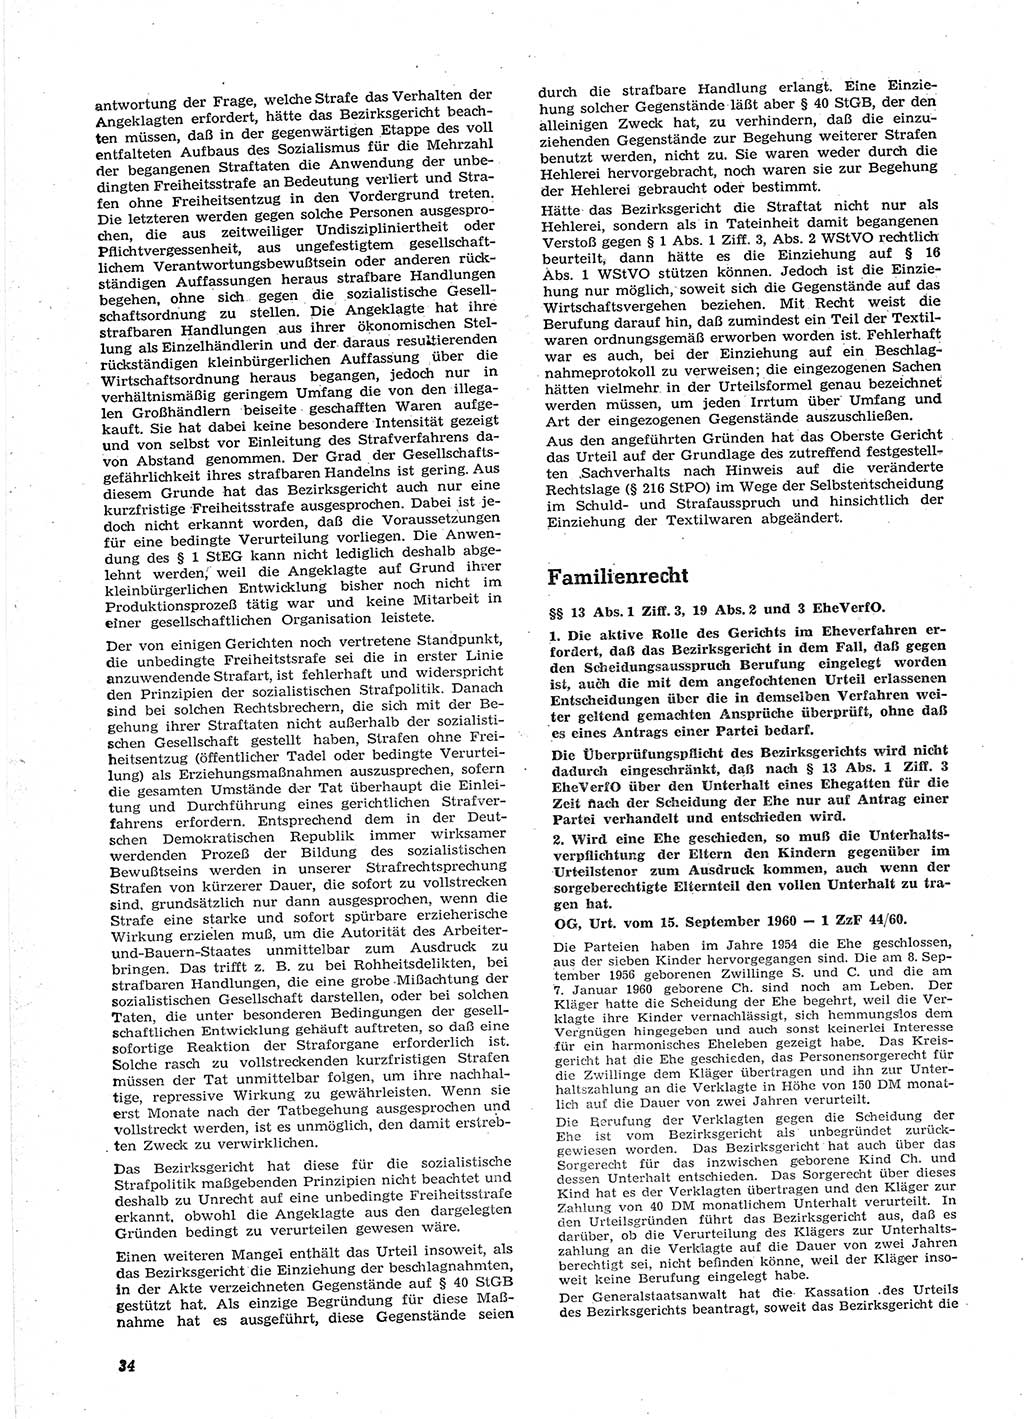 Neue Justiz (NJ), Zeitschrift für Recht und Rechtswissenschaft [Deutsche Demokratische Republik (DDR)], 15. Jahrgang 1961, Seite 34 (NJ DDR 1961, S. 34)